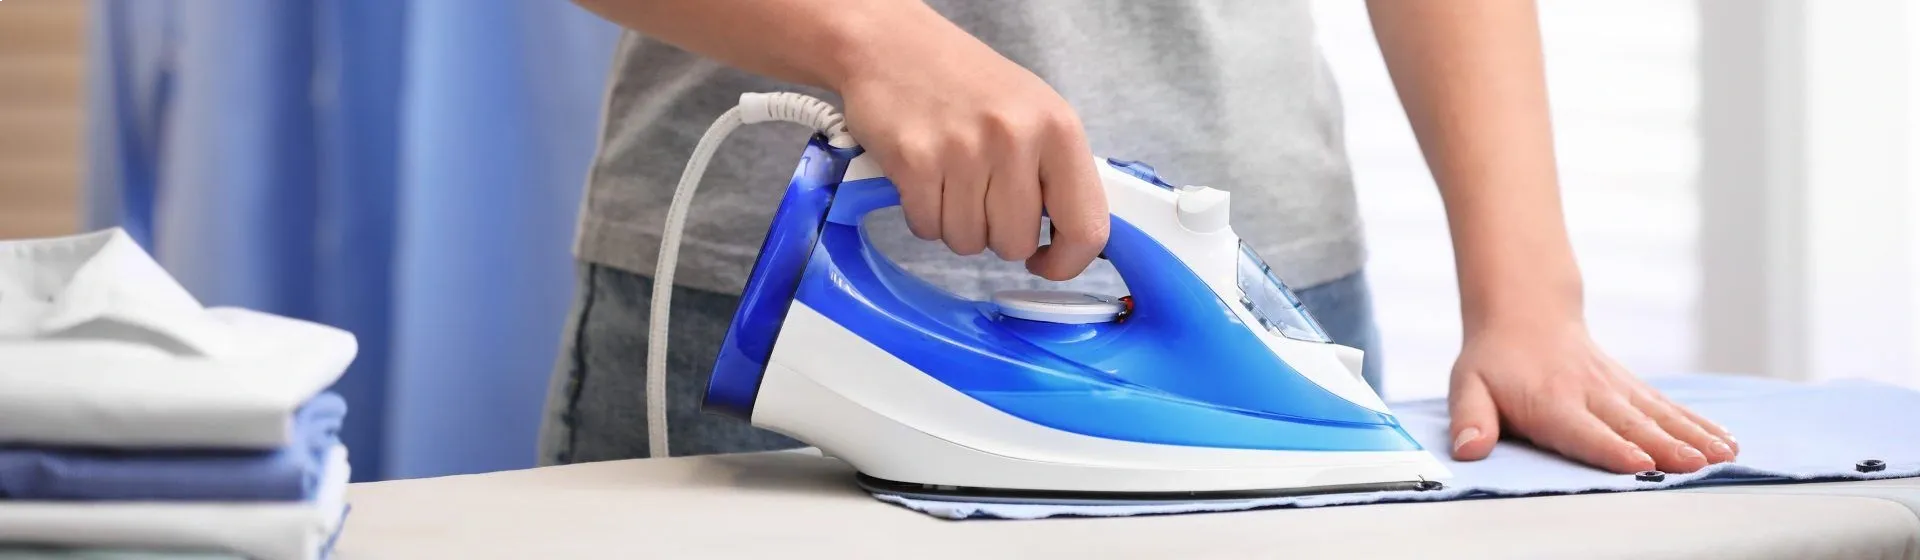 Capa do post: Como limpar ferro de passar roupa? 5 dicas para deixá-lo limpinho!